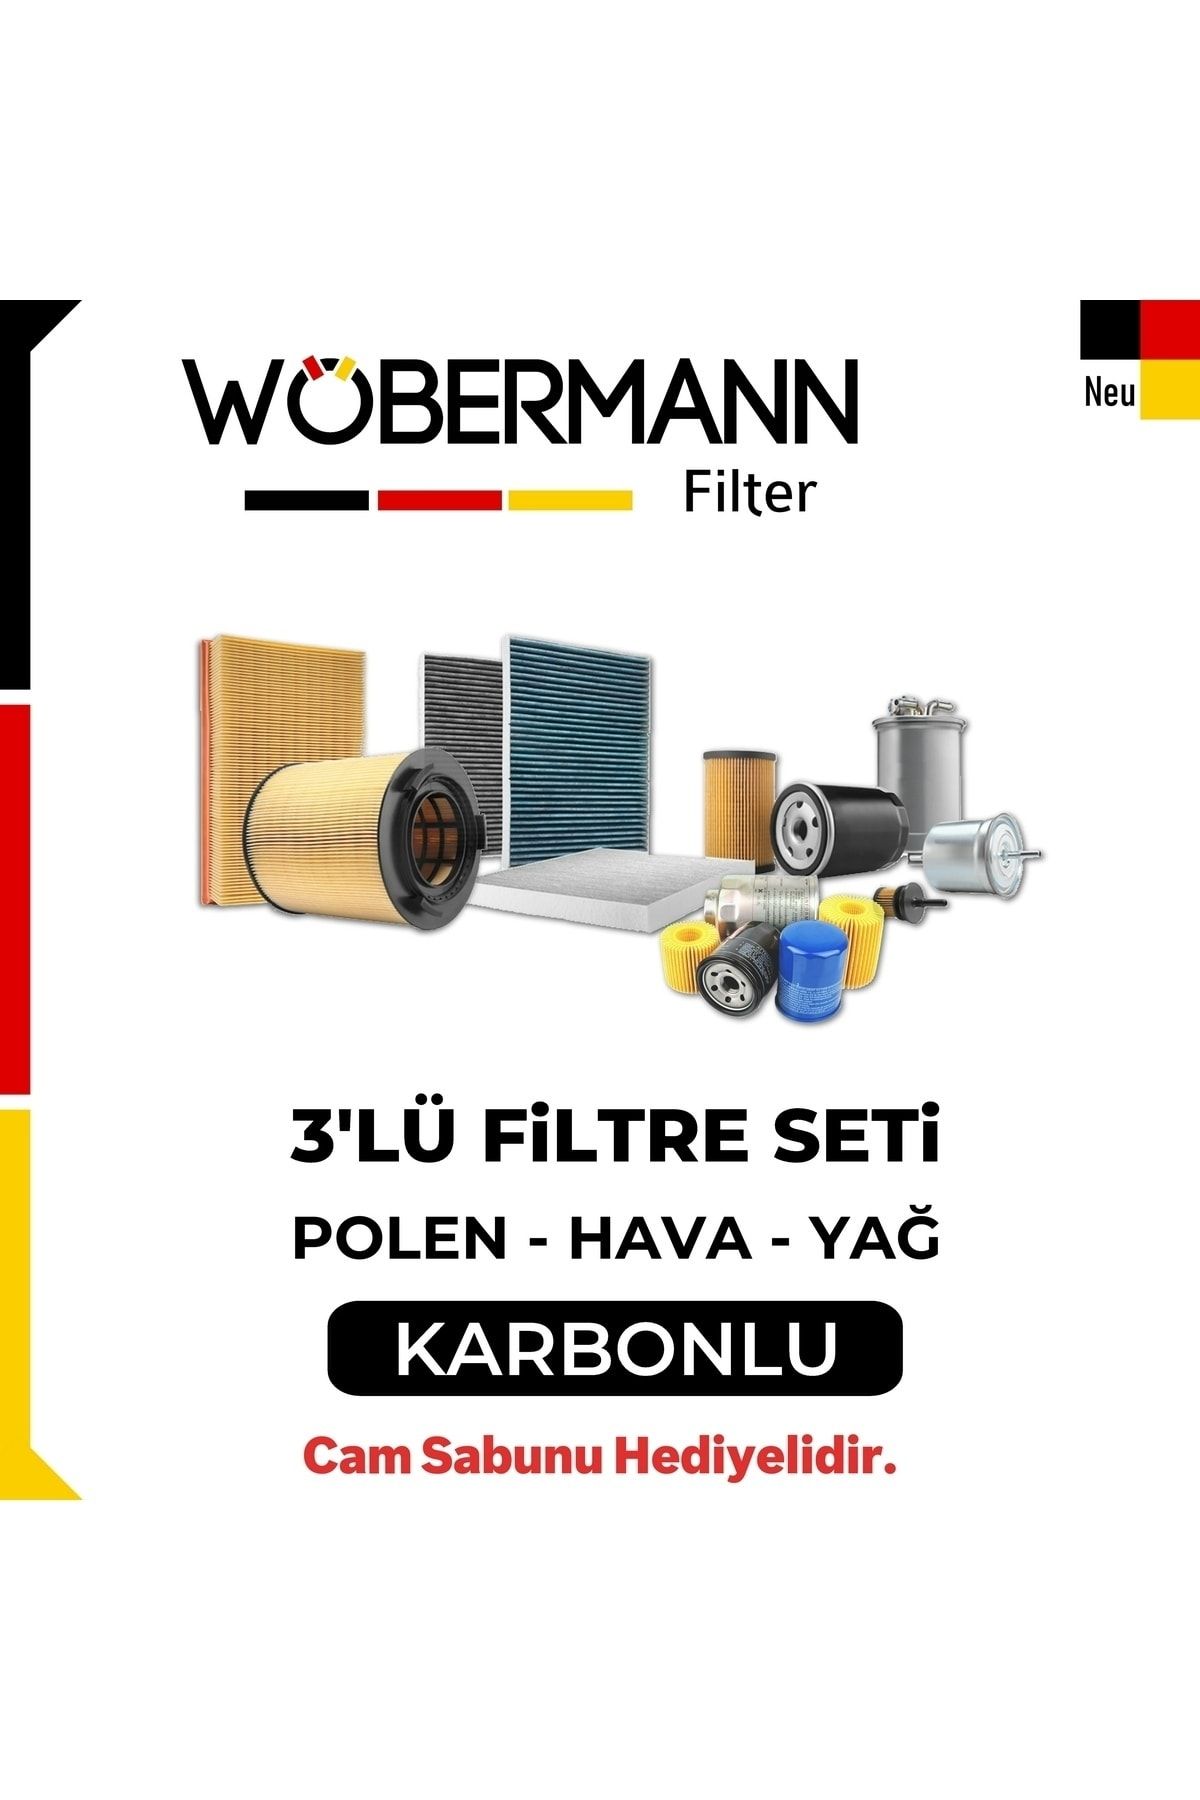 Wöbermann Vw Tiguan 2.0 Tdı Filtre Bakım Seti 2008-2011 3lü Karbonlu